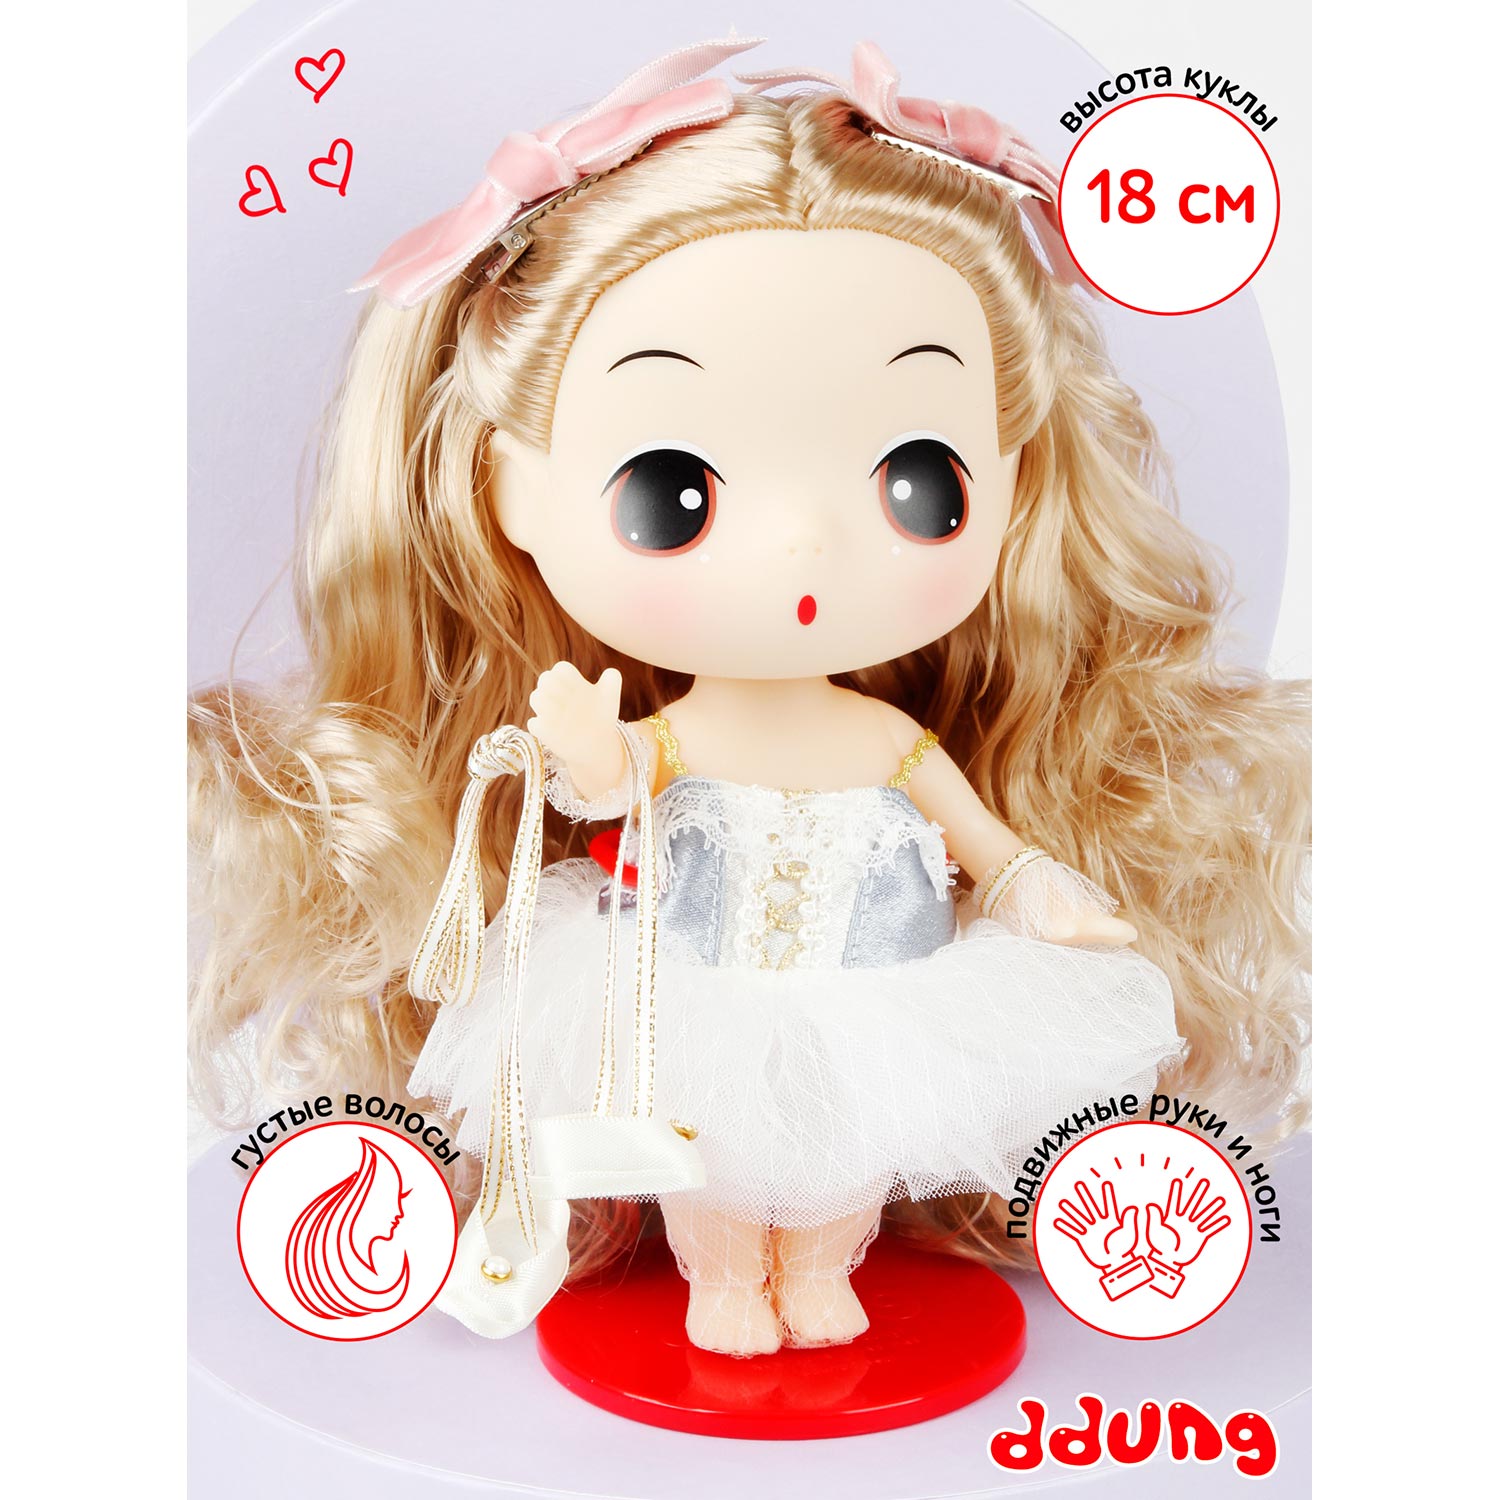 Кукла DDung Балерина 18 см корейская игрушка аниме FDE1848 - фото 12